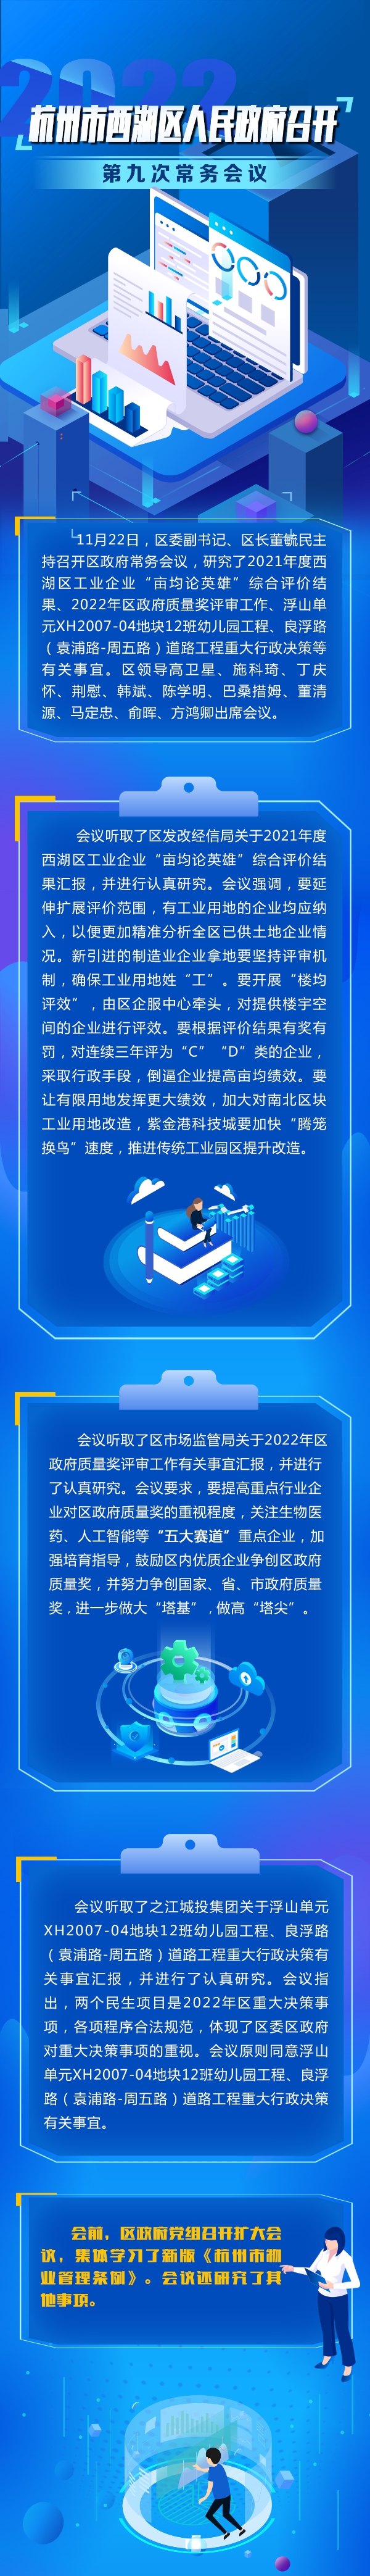 杭州市西湖区人民政府召开2022年第九次常务会议.jpg